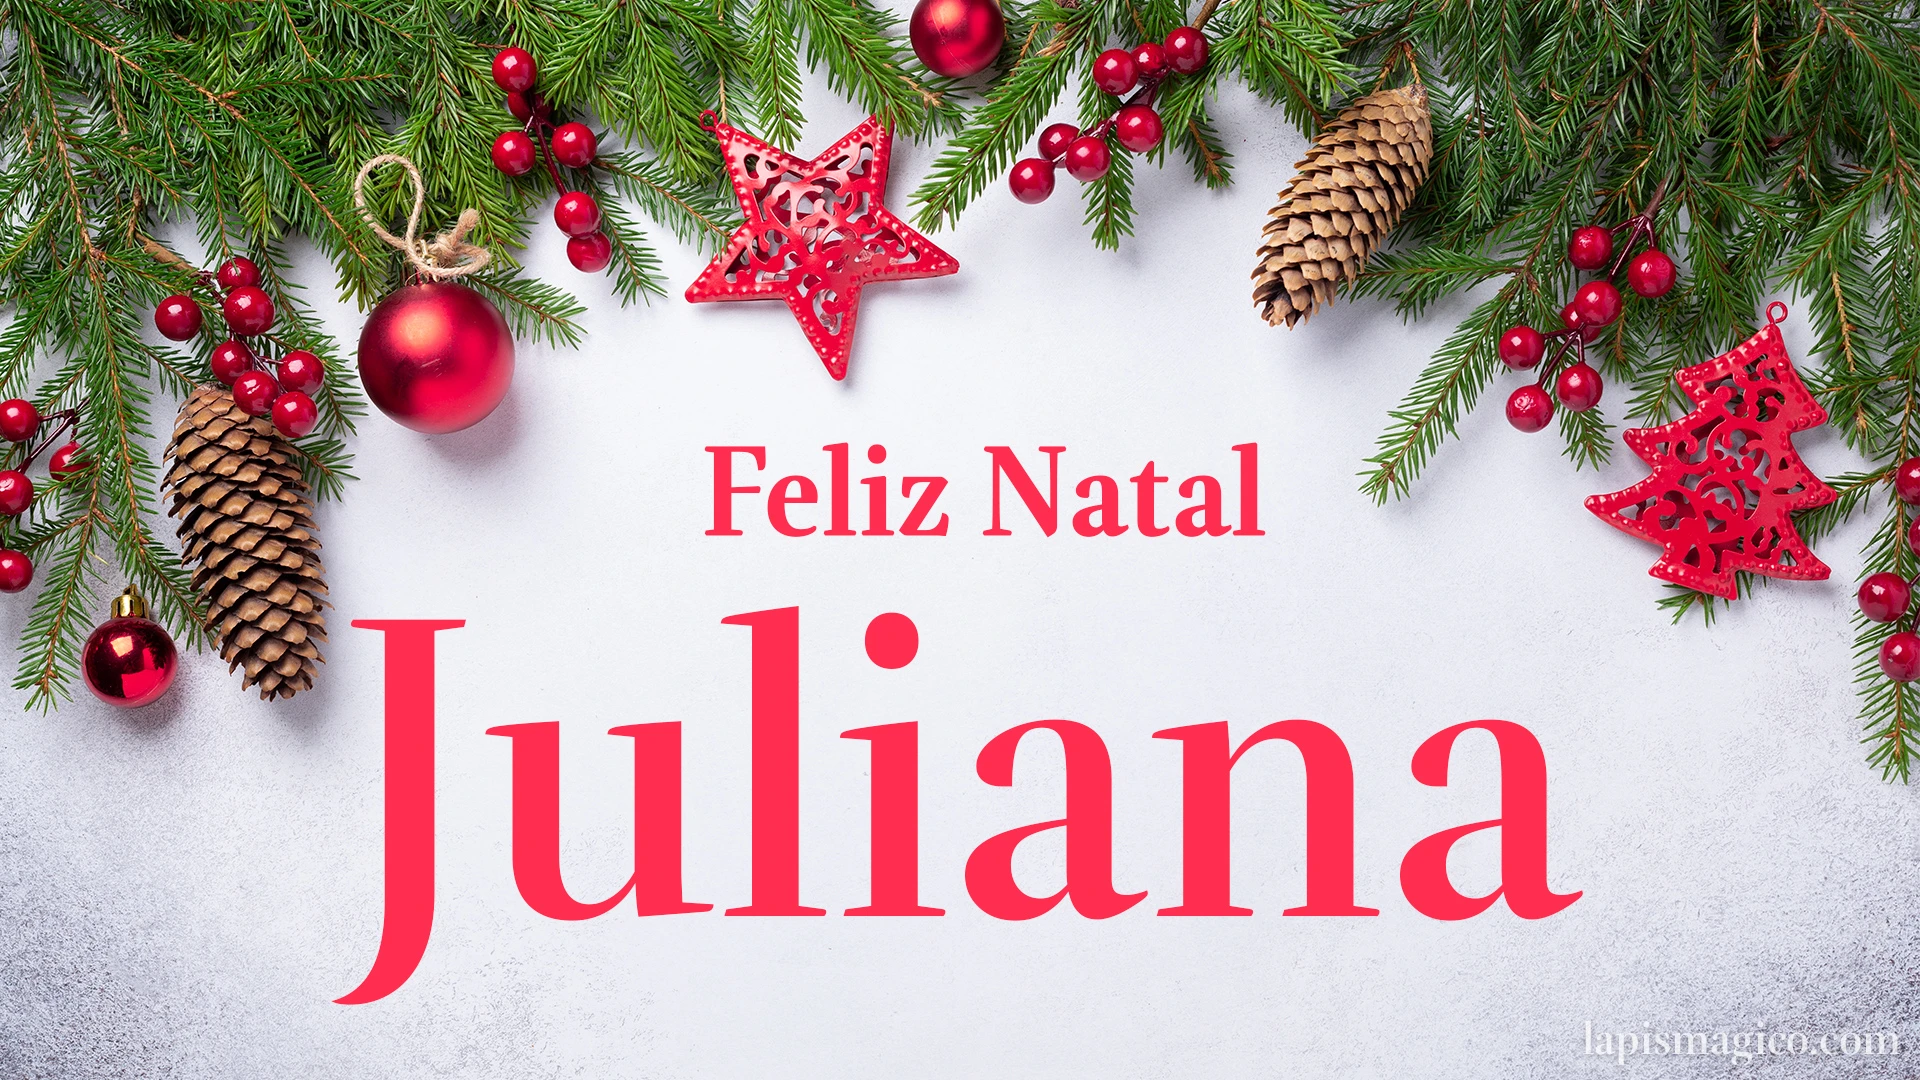 Oh Juliana, cinco postais de Feliz Natal Postal com o teu nome